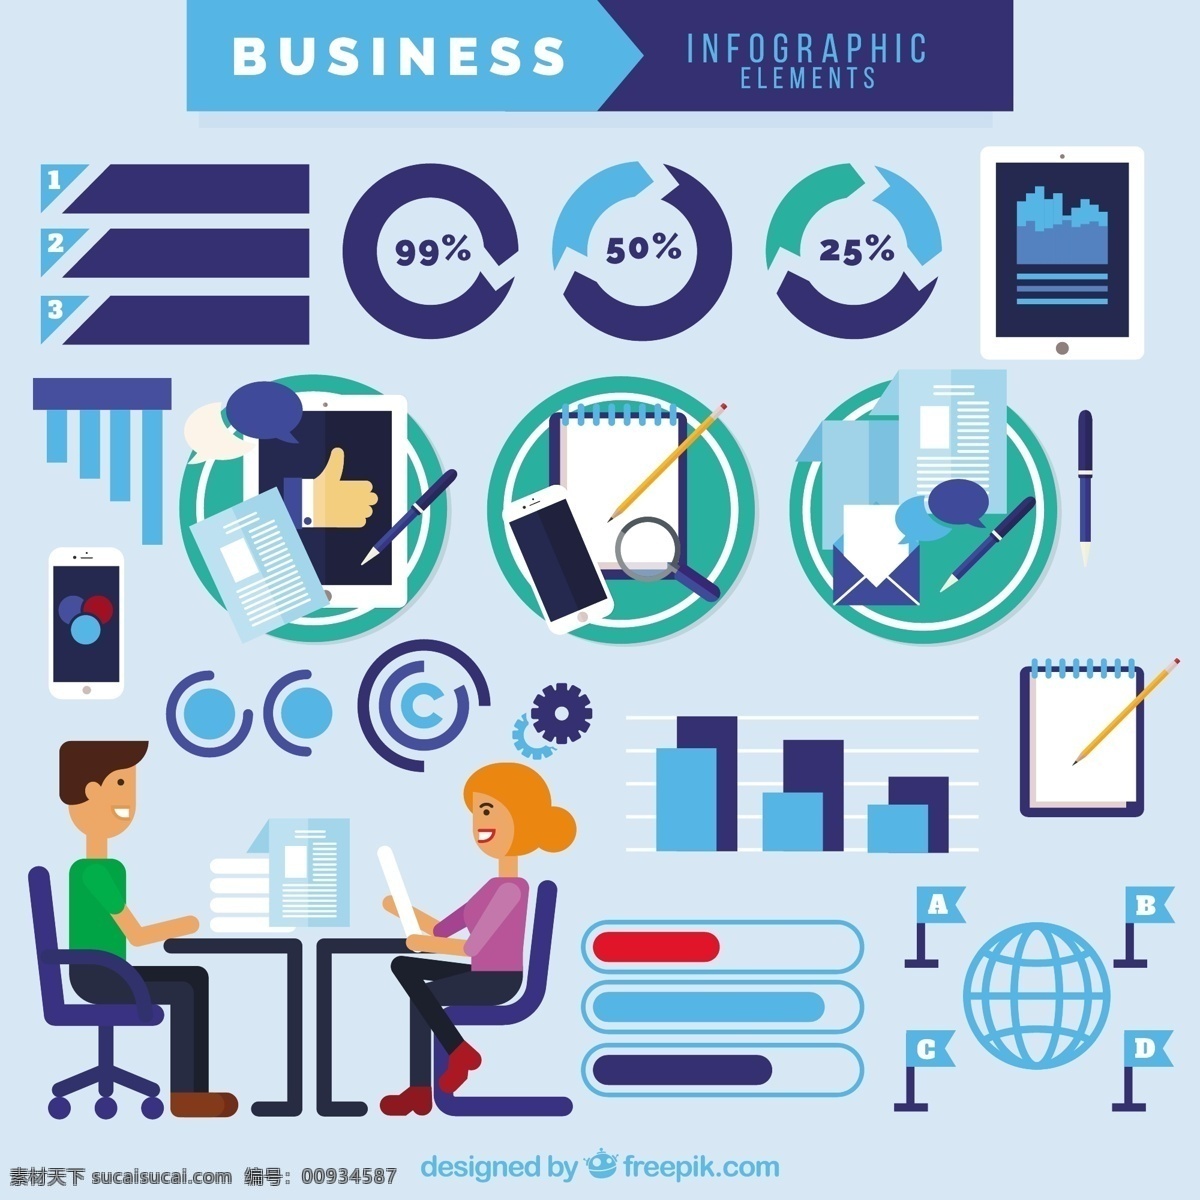 商业 信息 图表 元素 业务 人 计算机 平 图形 会议 生意人 商人 企业 团队 公司 图 工人